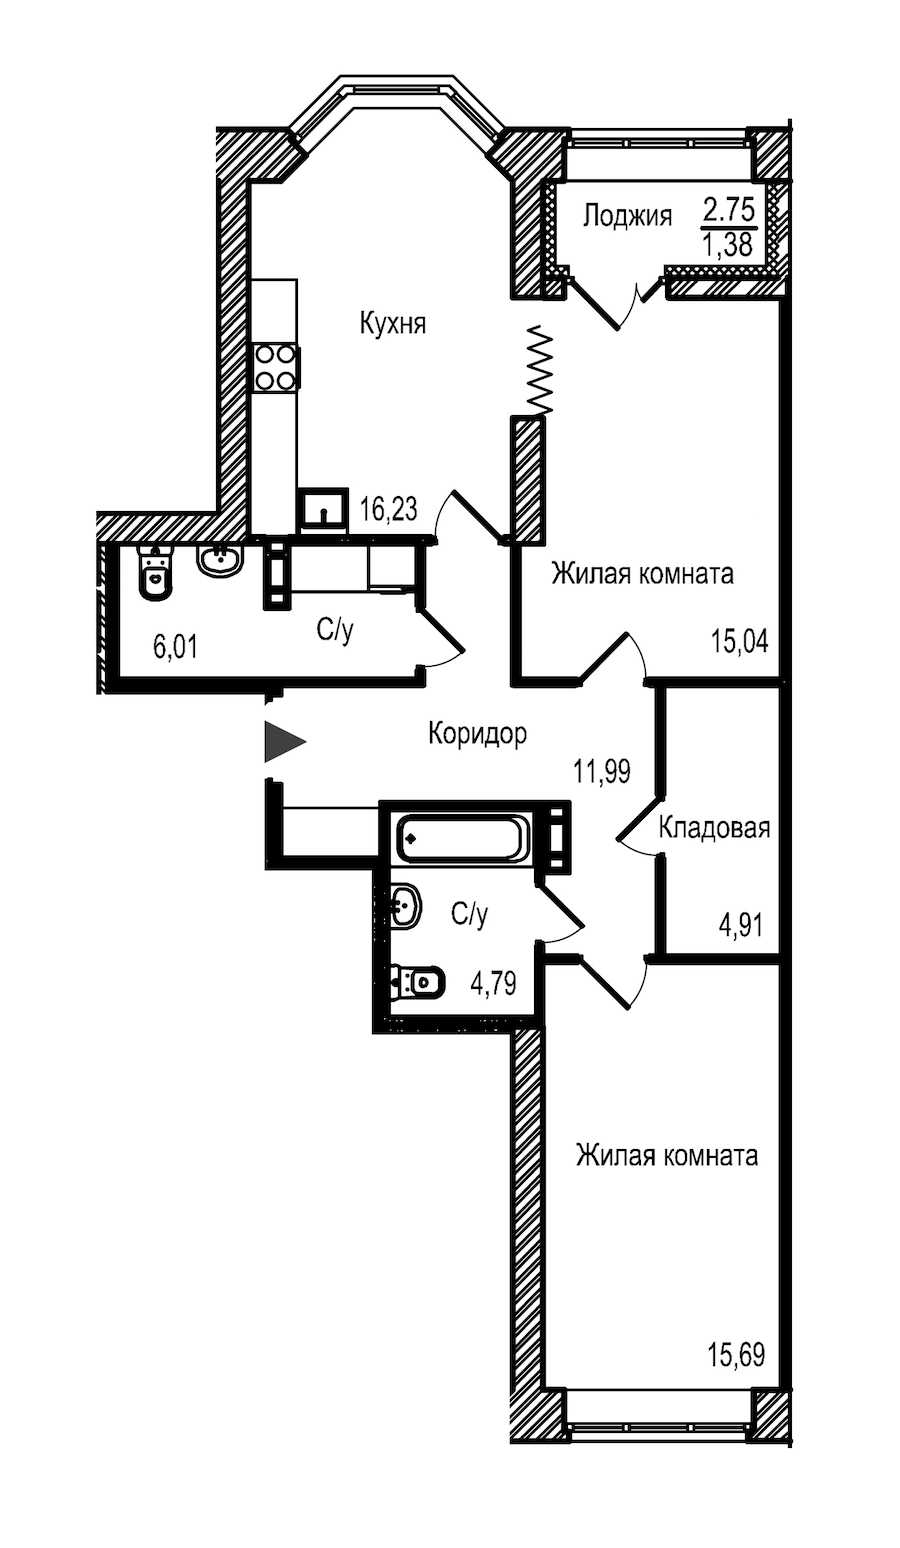 Двухкомнатная квартира в : площадь 76.04 м2 , этаж: 3 - 4 – купить в Санкт-Петербурге